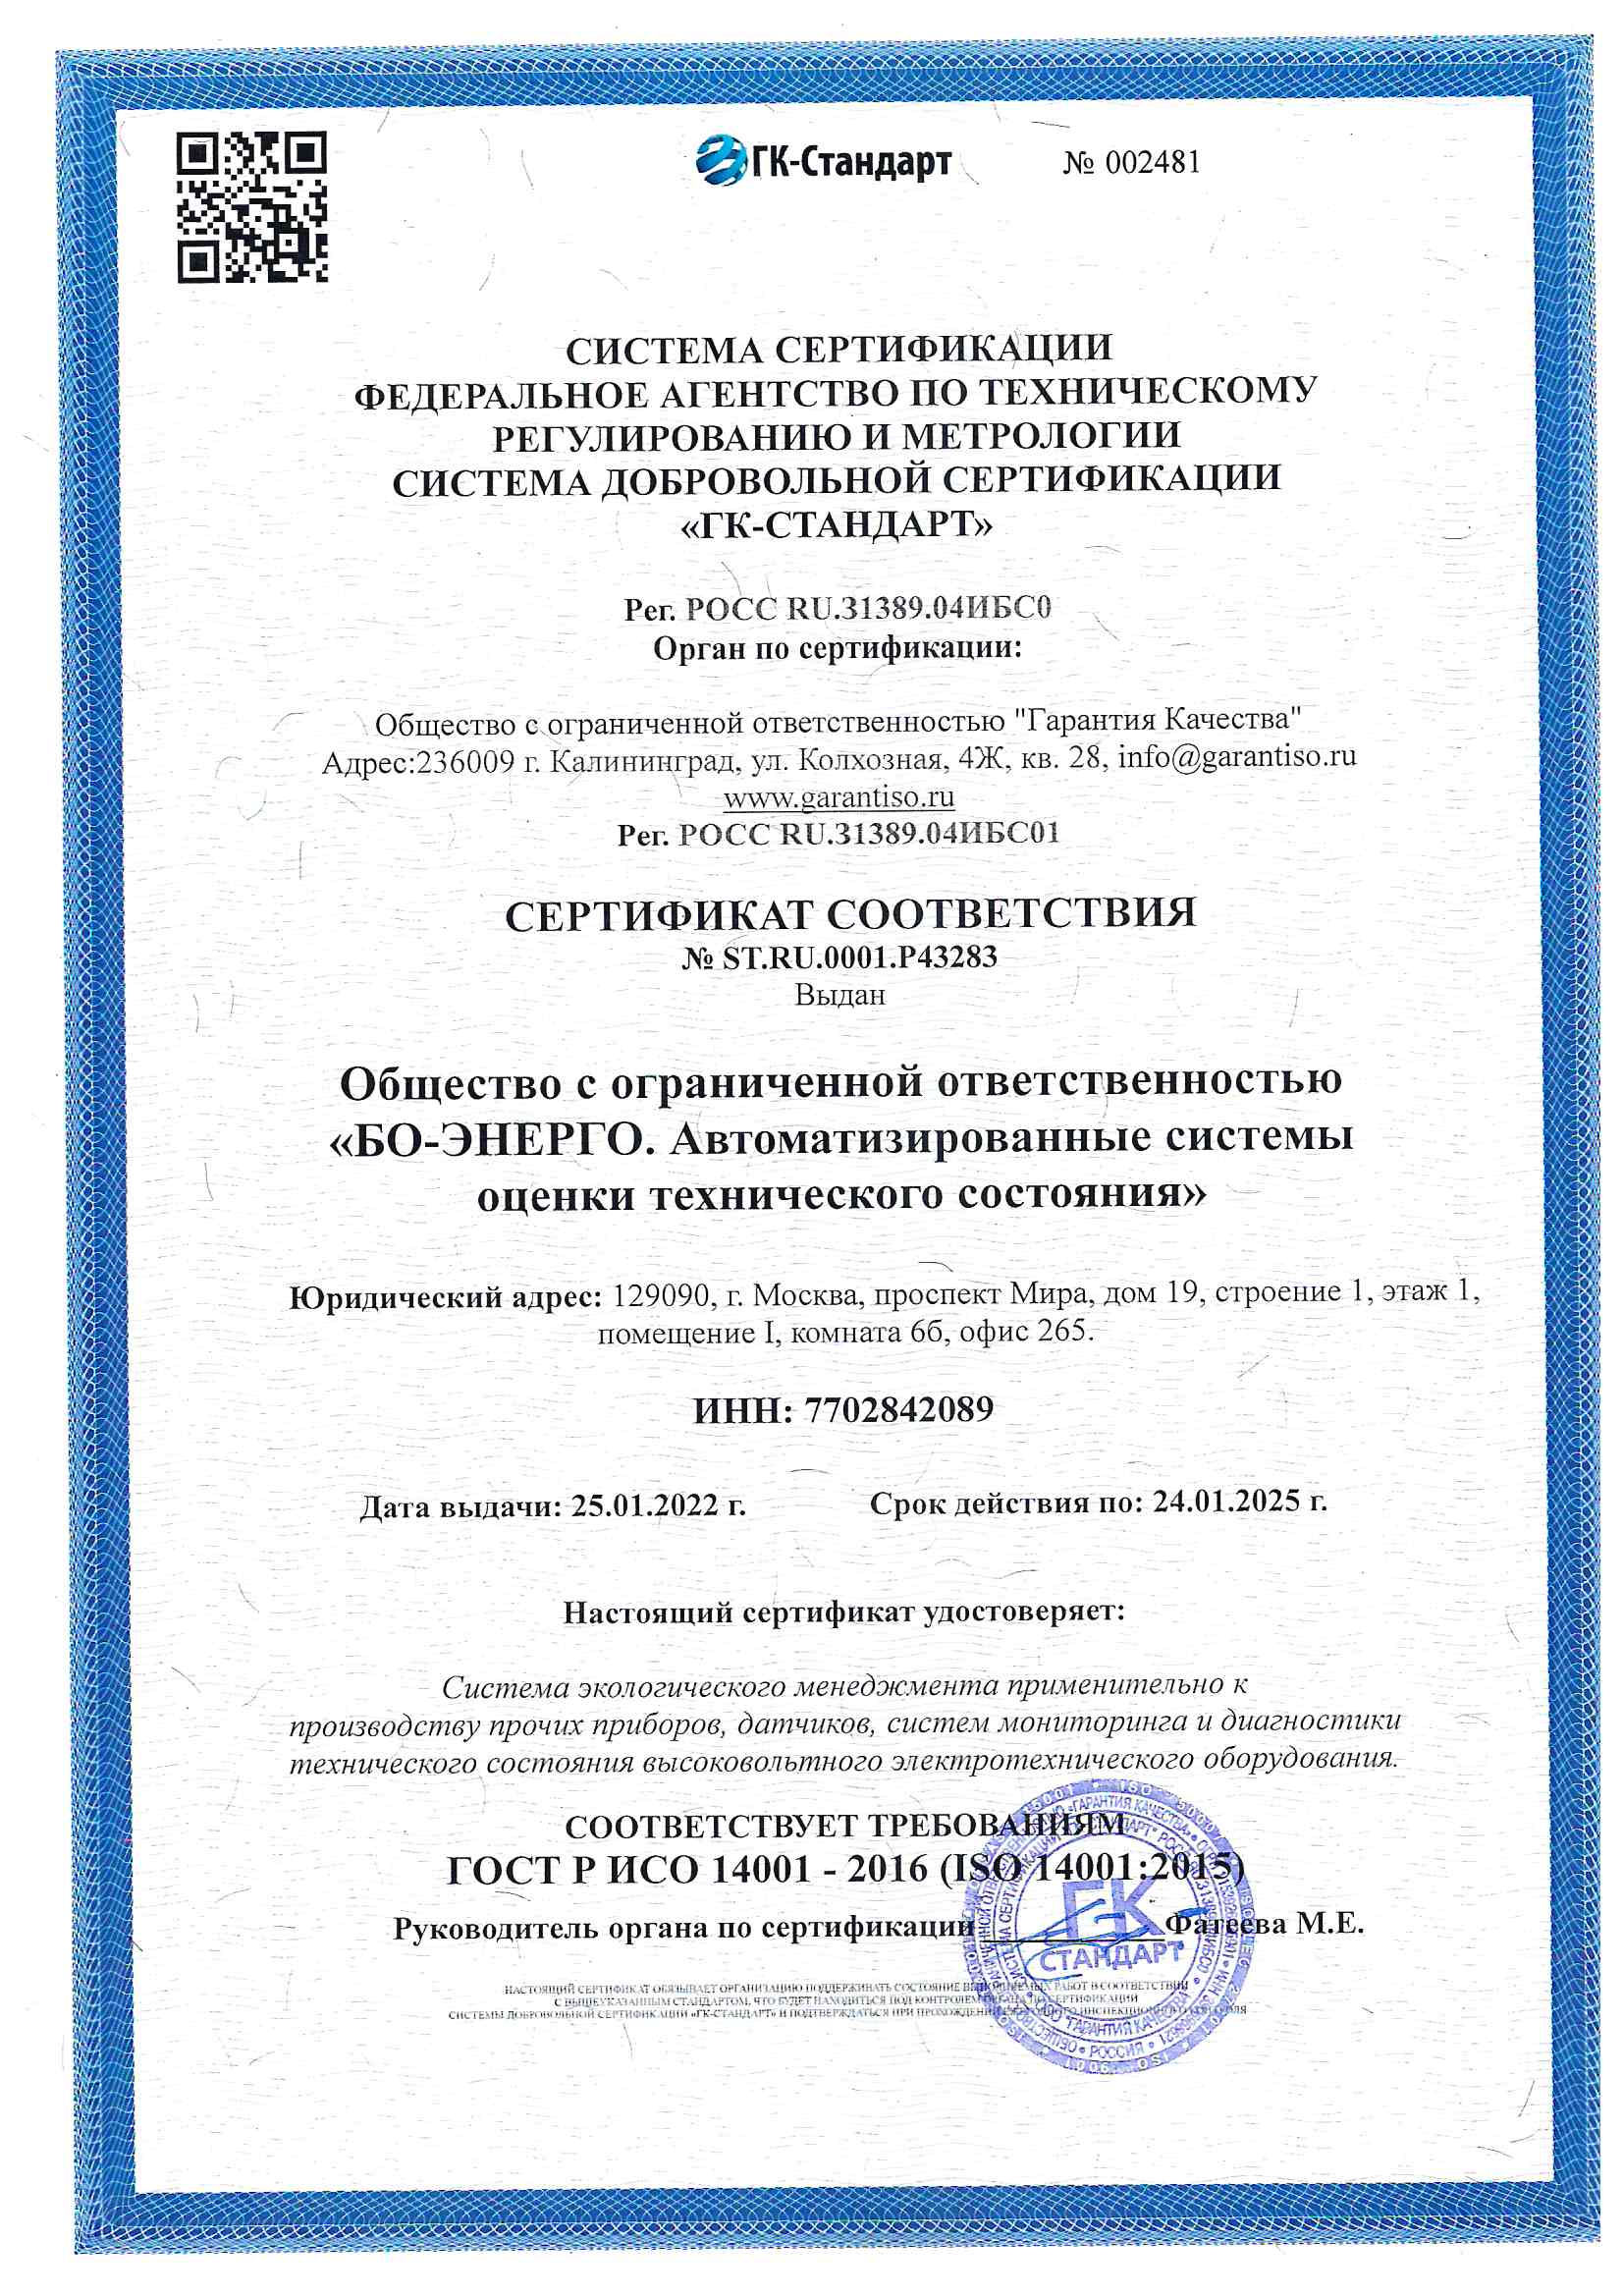 Сертификат ГОСТ Р ИСО 14001-2016 (ISO14001:2015)